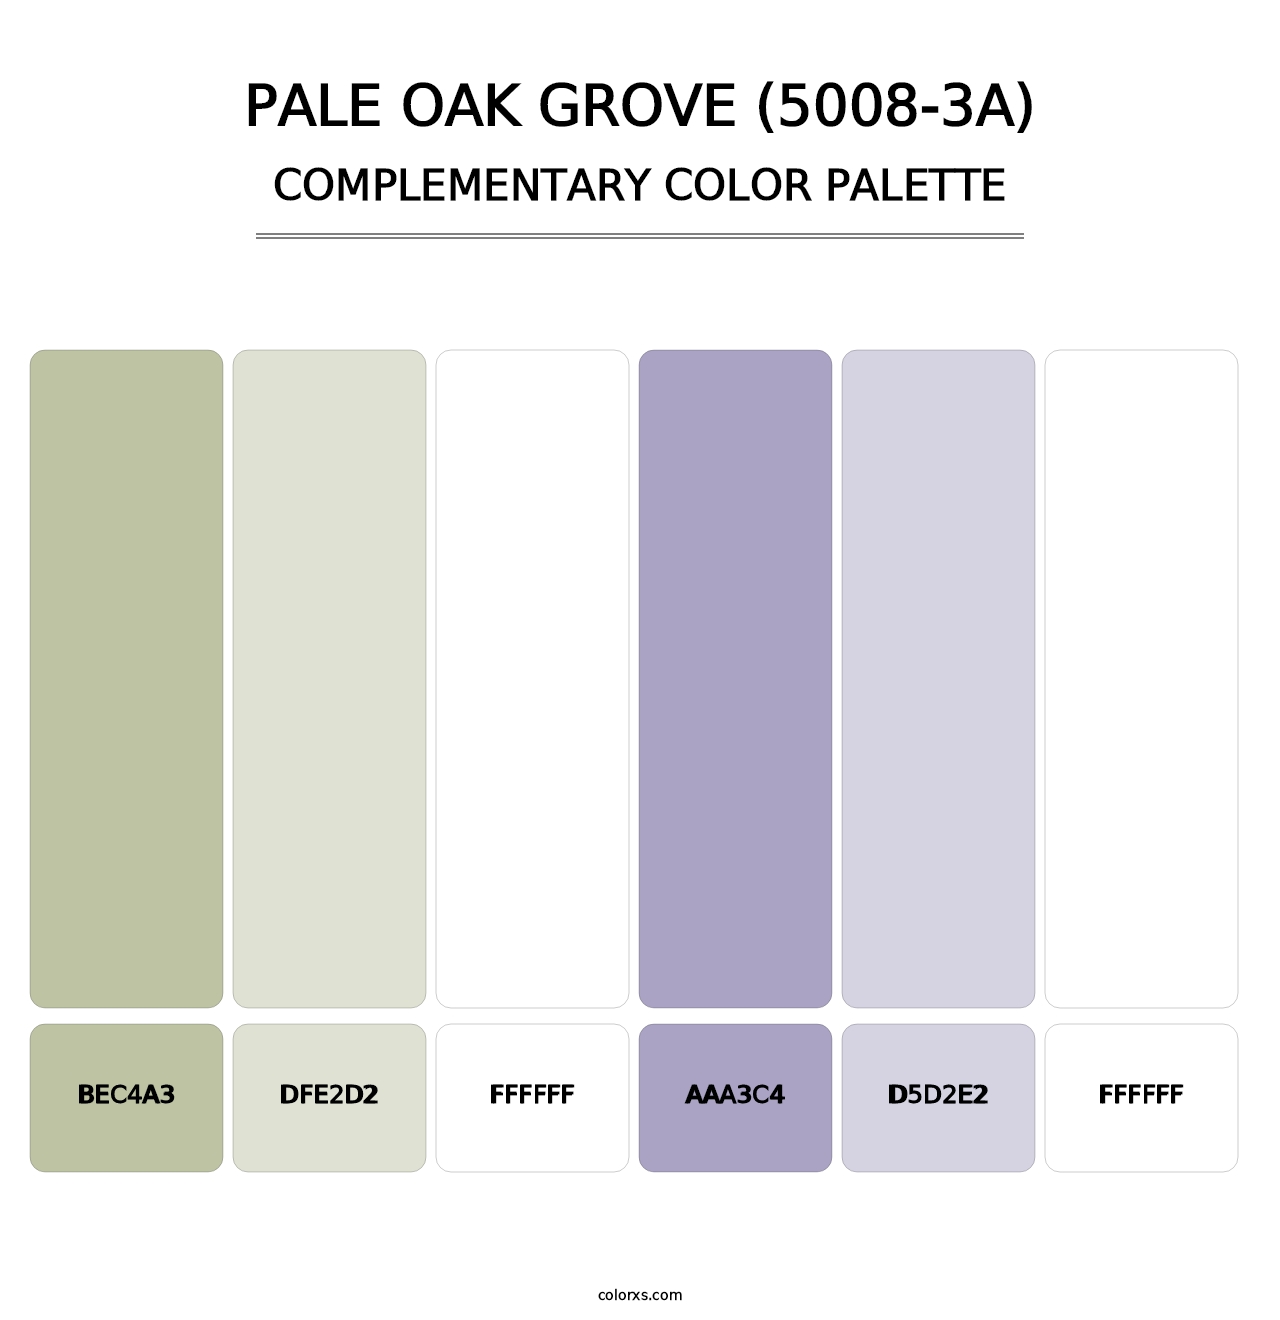 Pale Oak Grove (5008-3A) - Complementary Color Palette